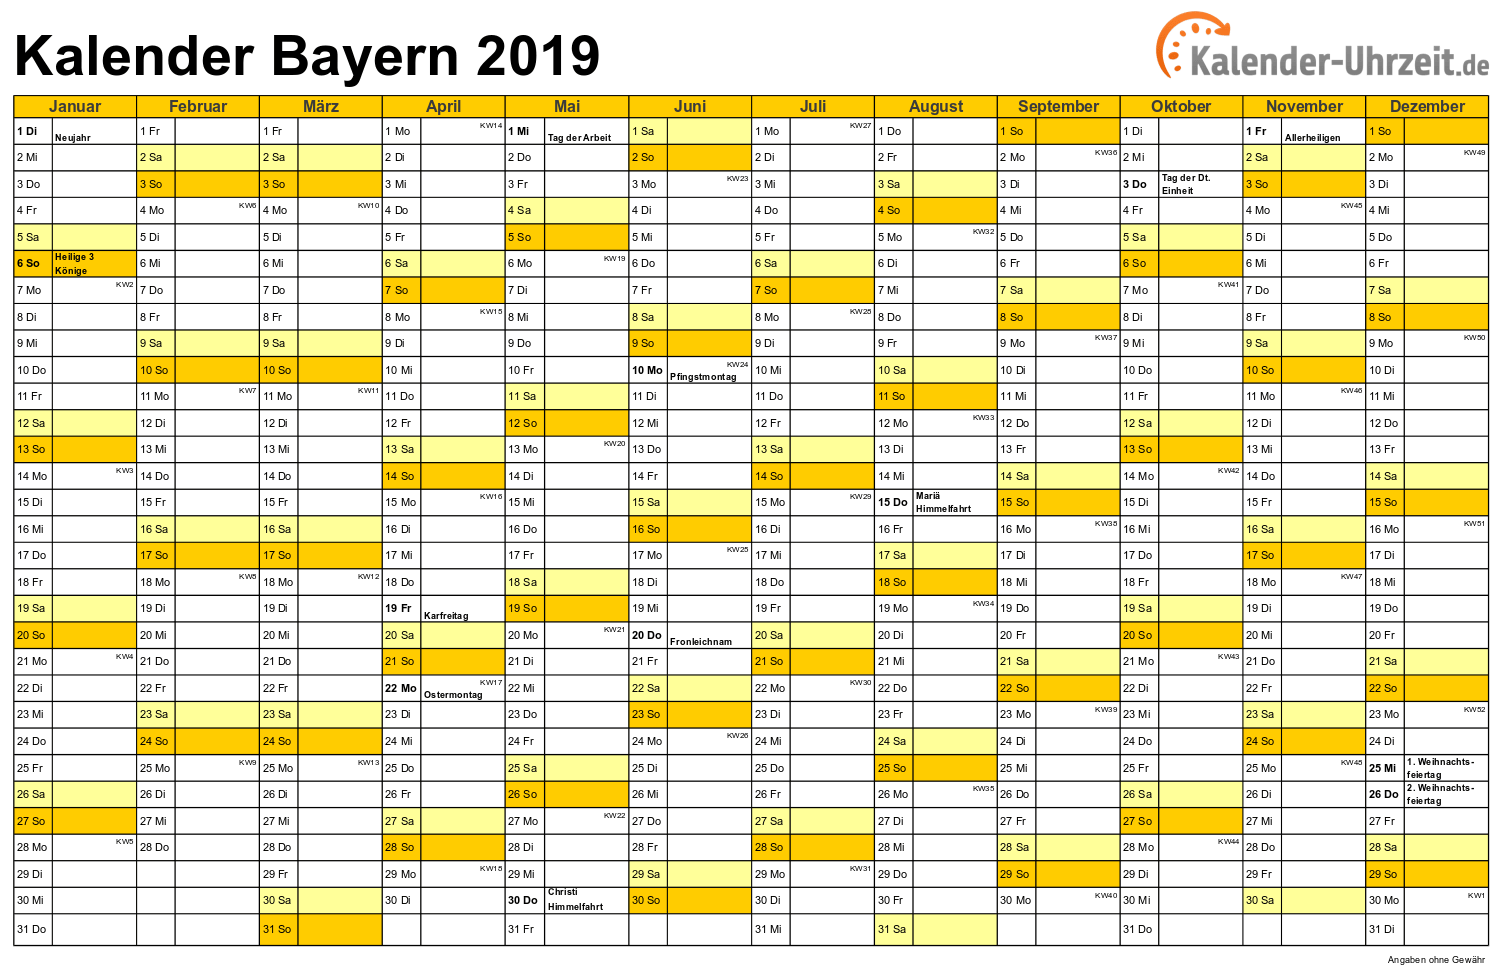 Bayern Kalender 2019 mit Feiertagen - quer-einseitig